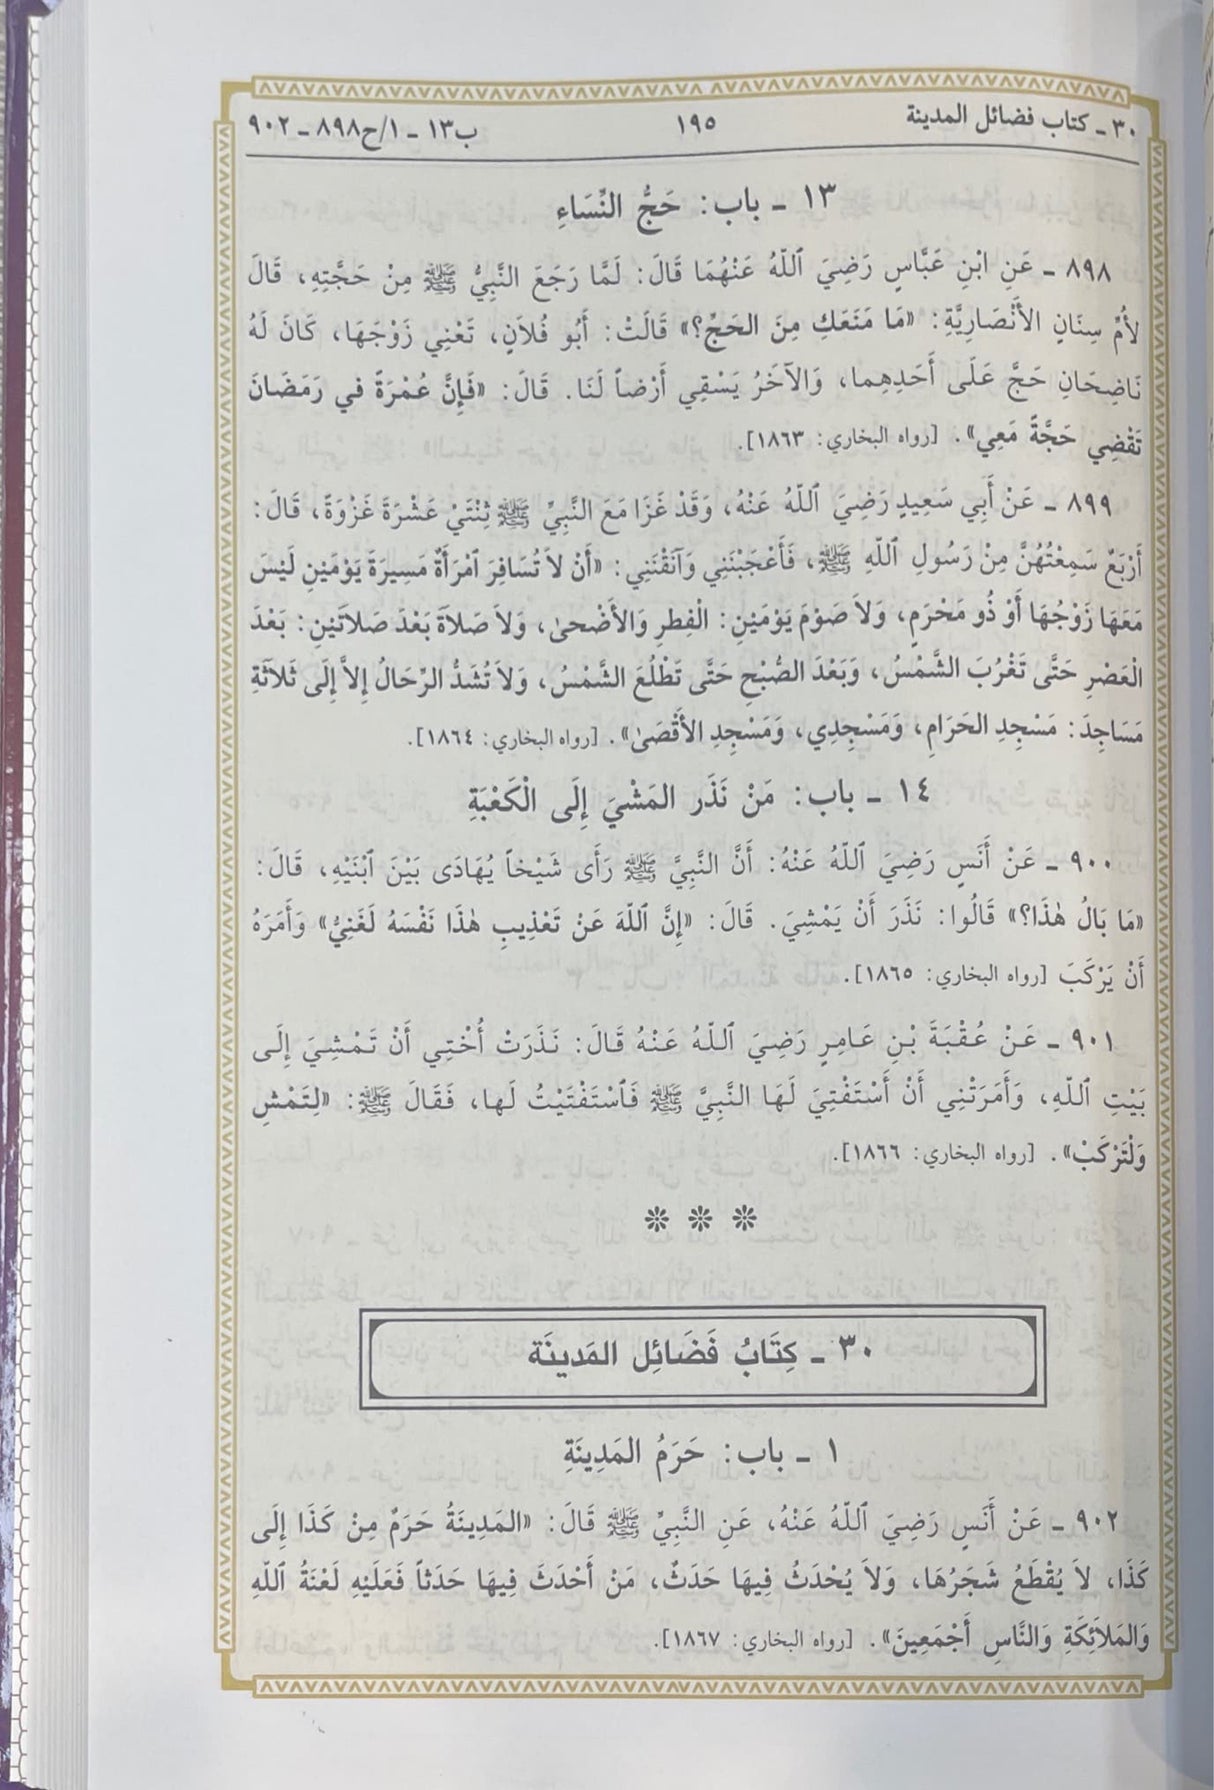 مختصر صحيح البخاري Mukhtasar Sahih Al Bukhari (Ibn Hazm)